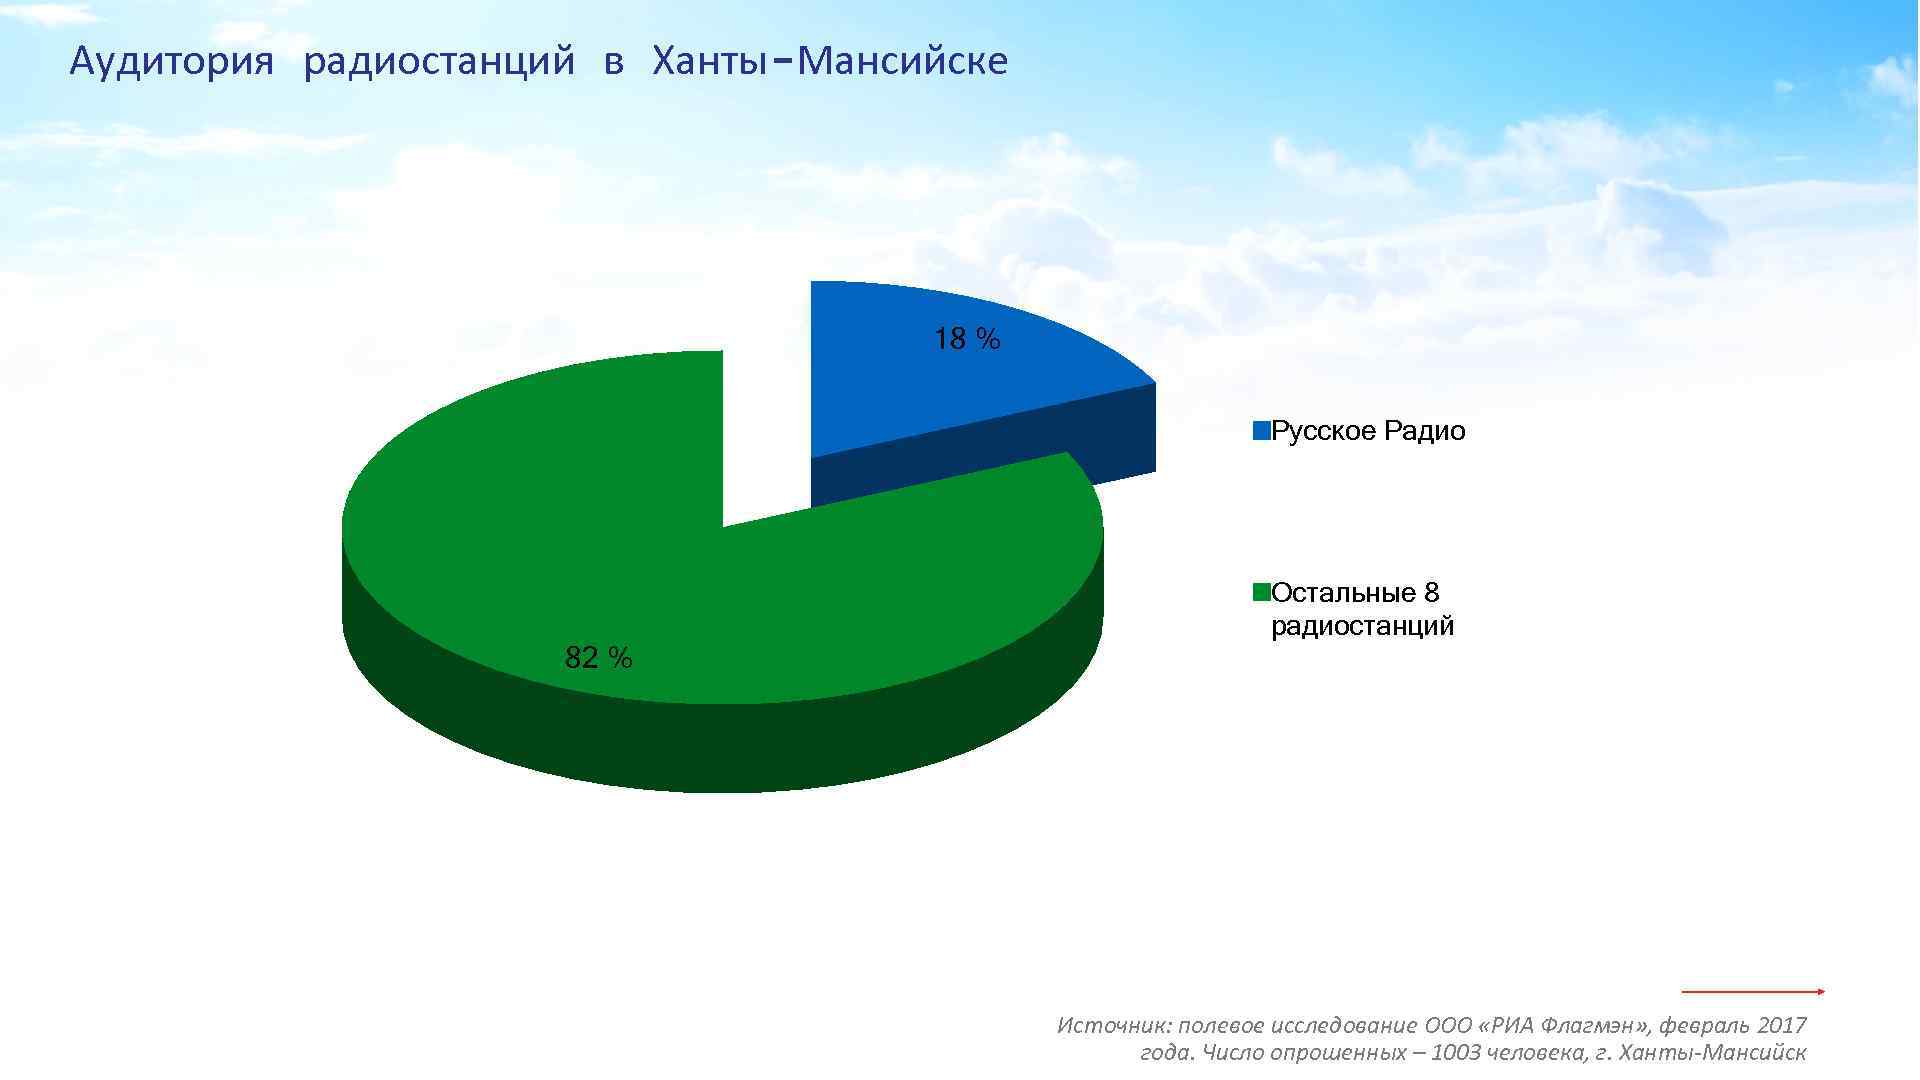 Аудитория радиостанций в Ханты-Мансийске 18 % Русское Радио 82 % Остальные 8 радиостанций Источник: